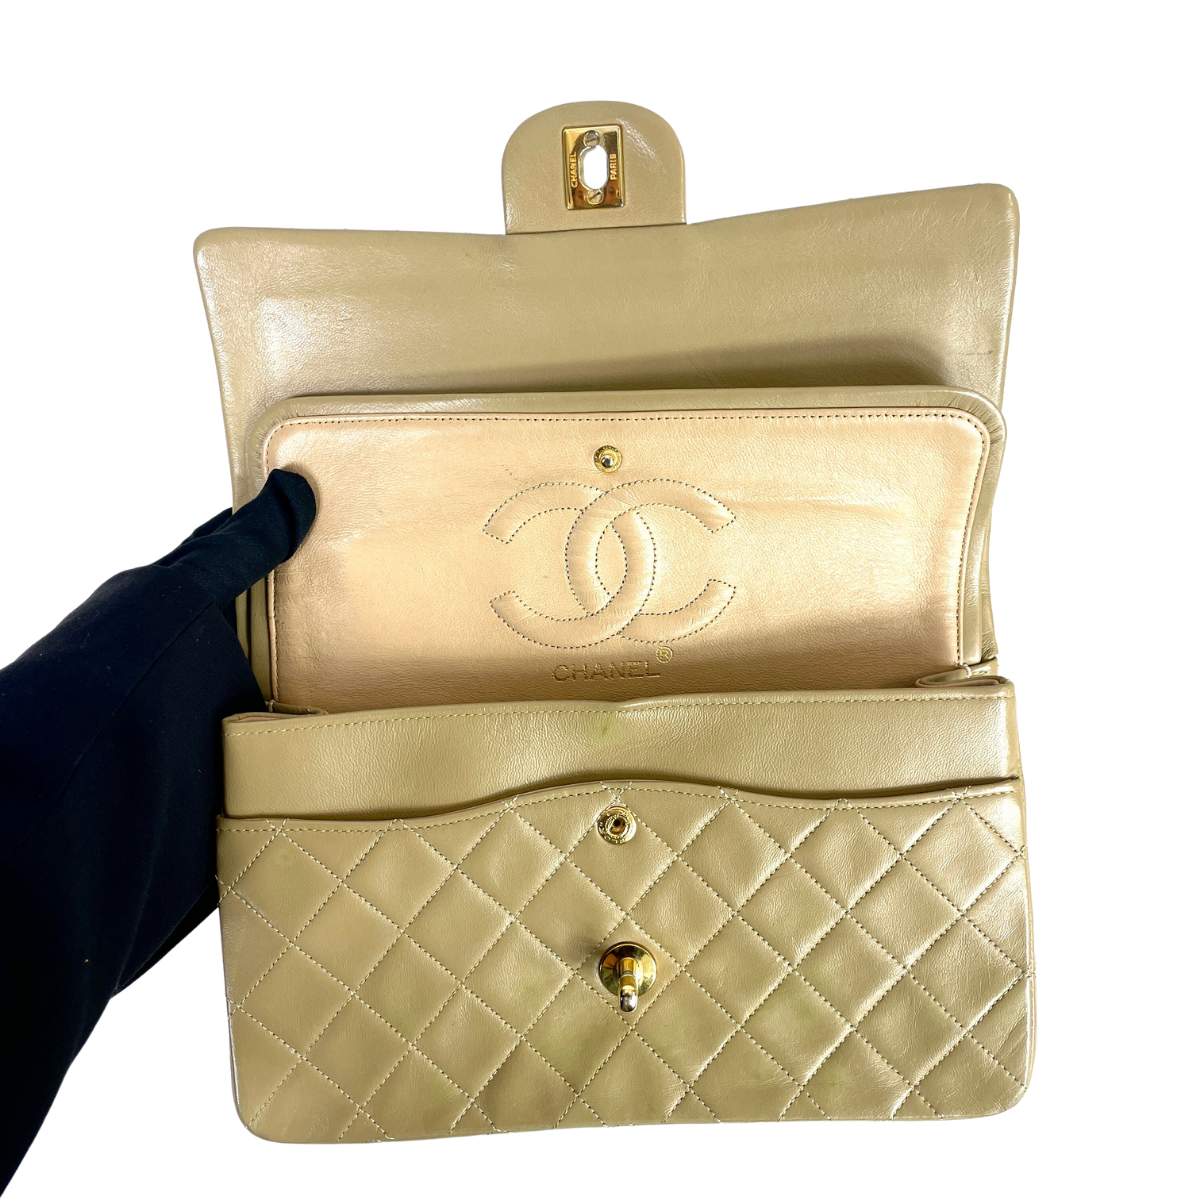 Chanel Chanel Μπεζ Κλασικό Μεσαίο Δίκλινο Flap Bag Lambskin Leather - Τσάντα ώμου - Etoile Luxury Vintage